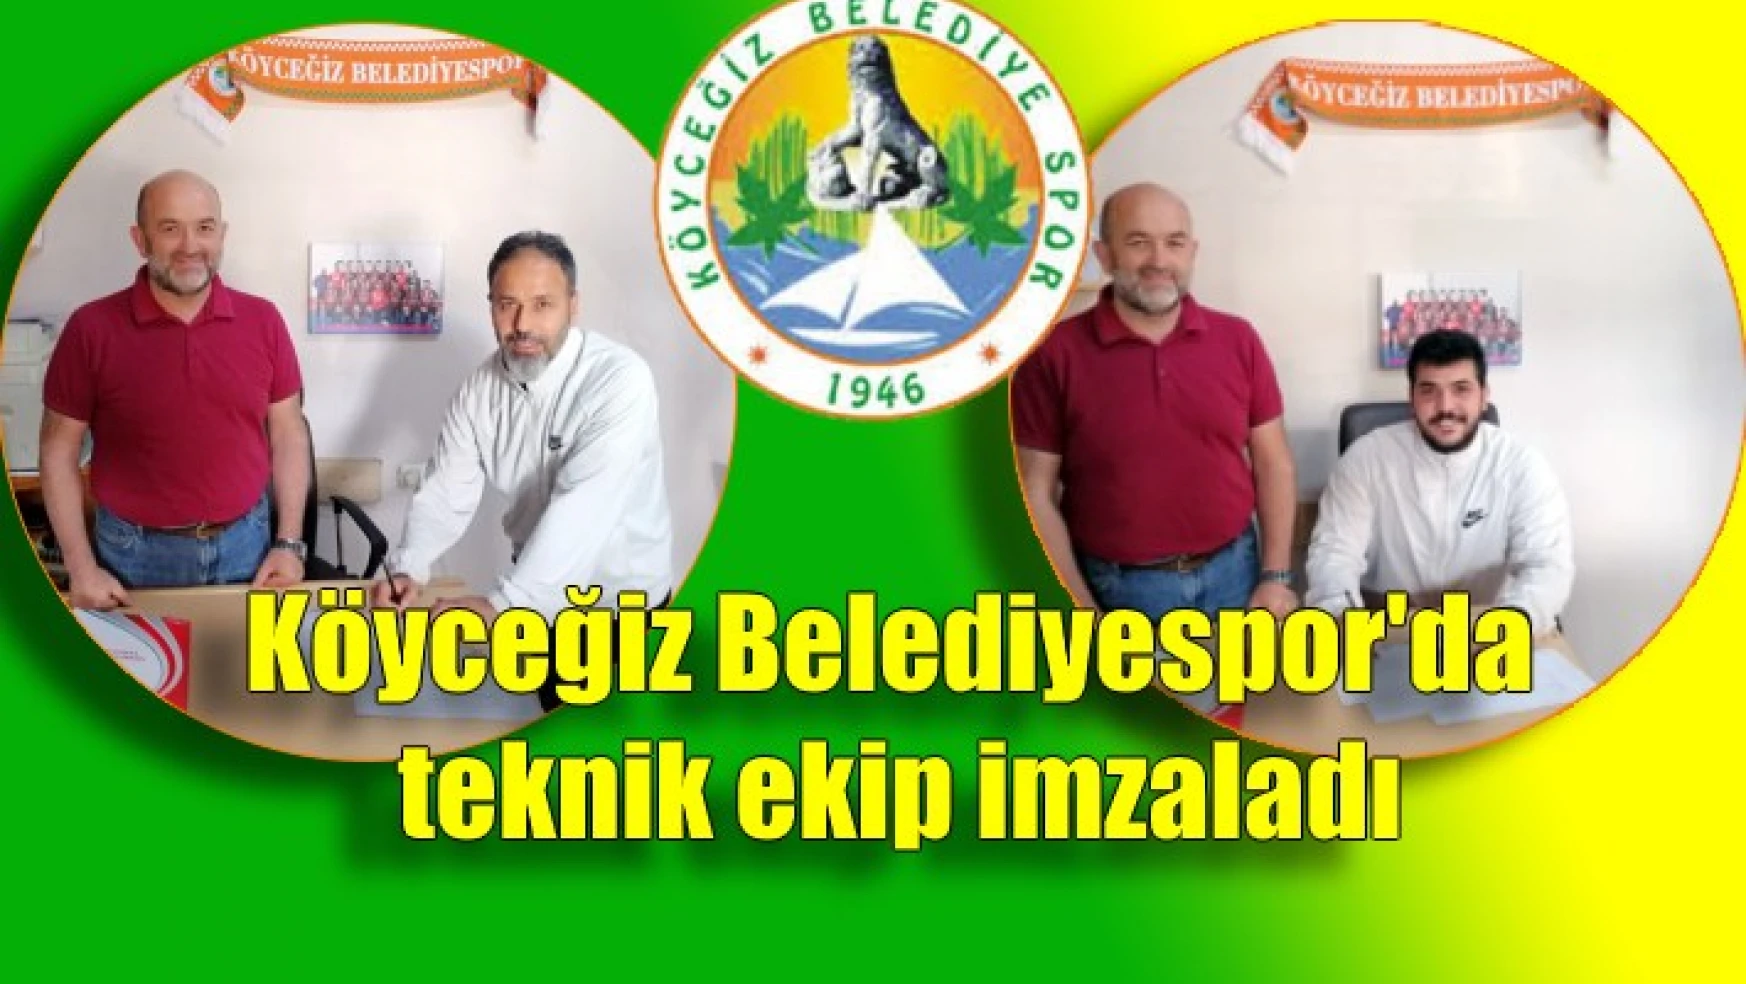 Köyceğiz Belediyespor’da teknik ekip imzaladı